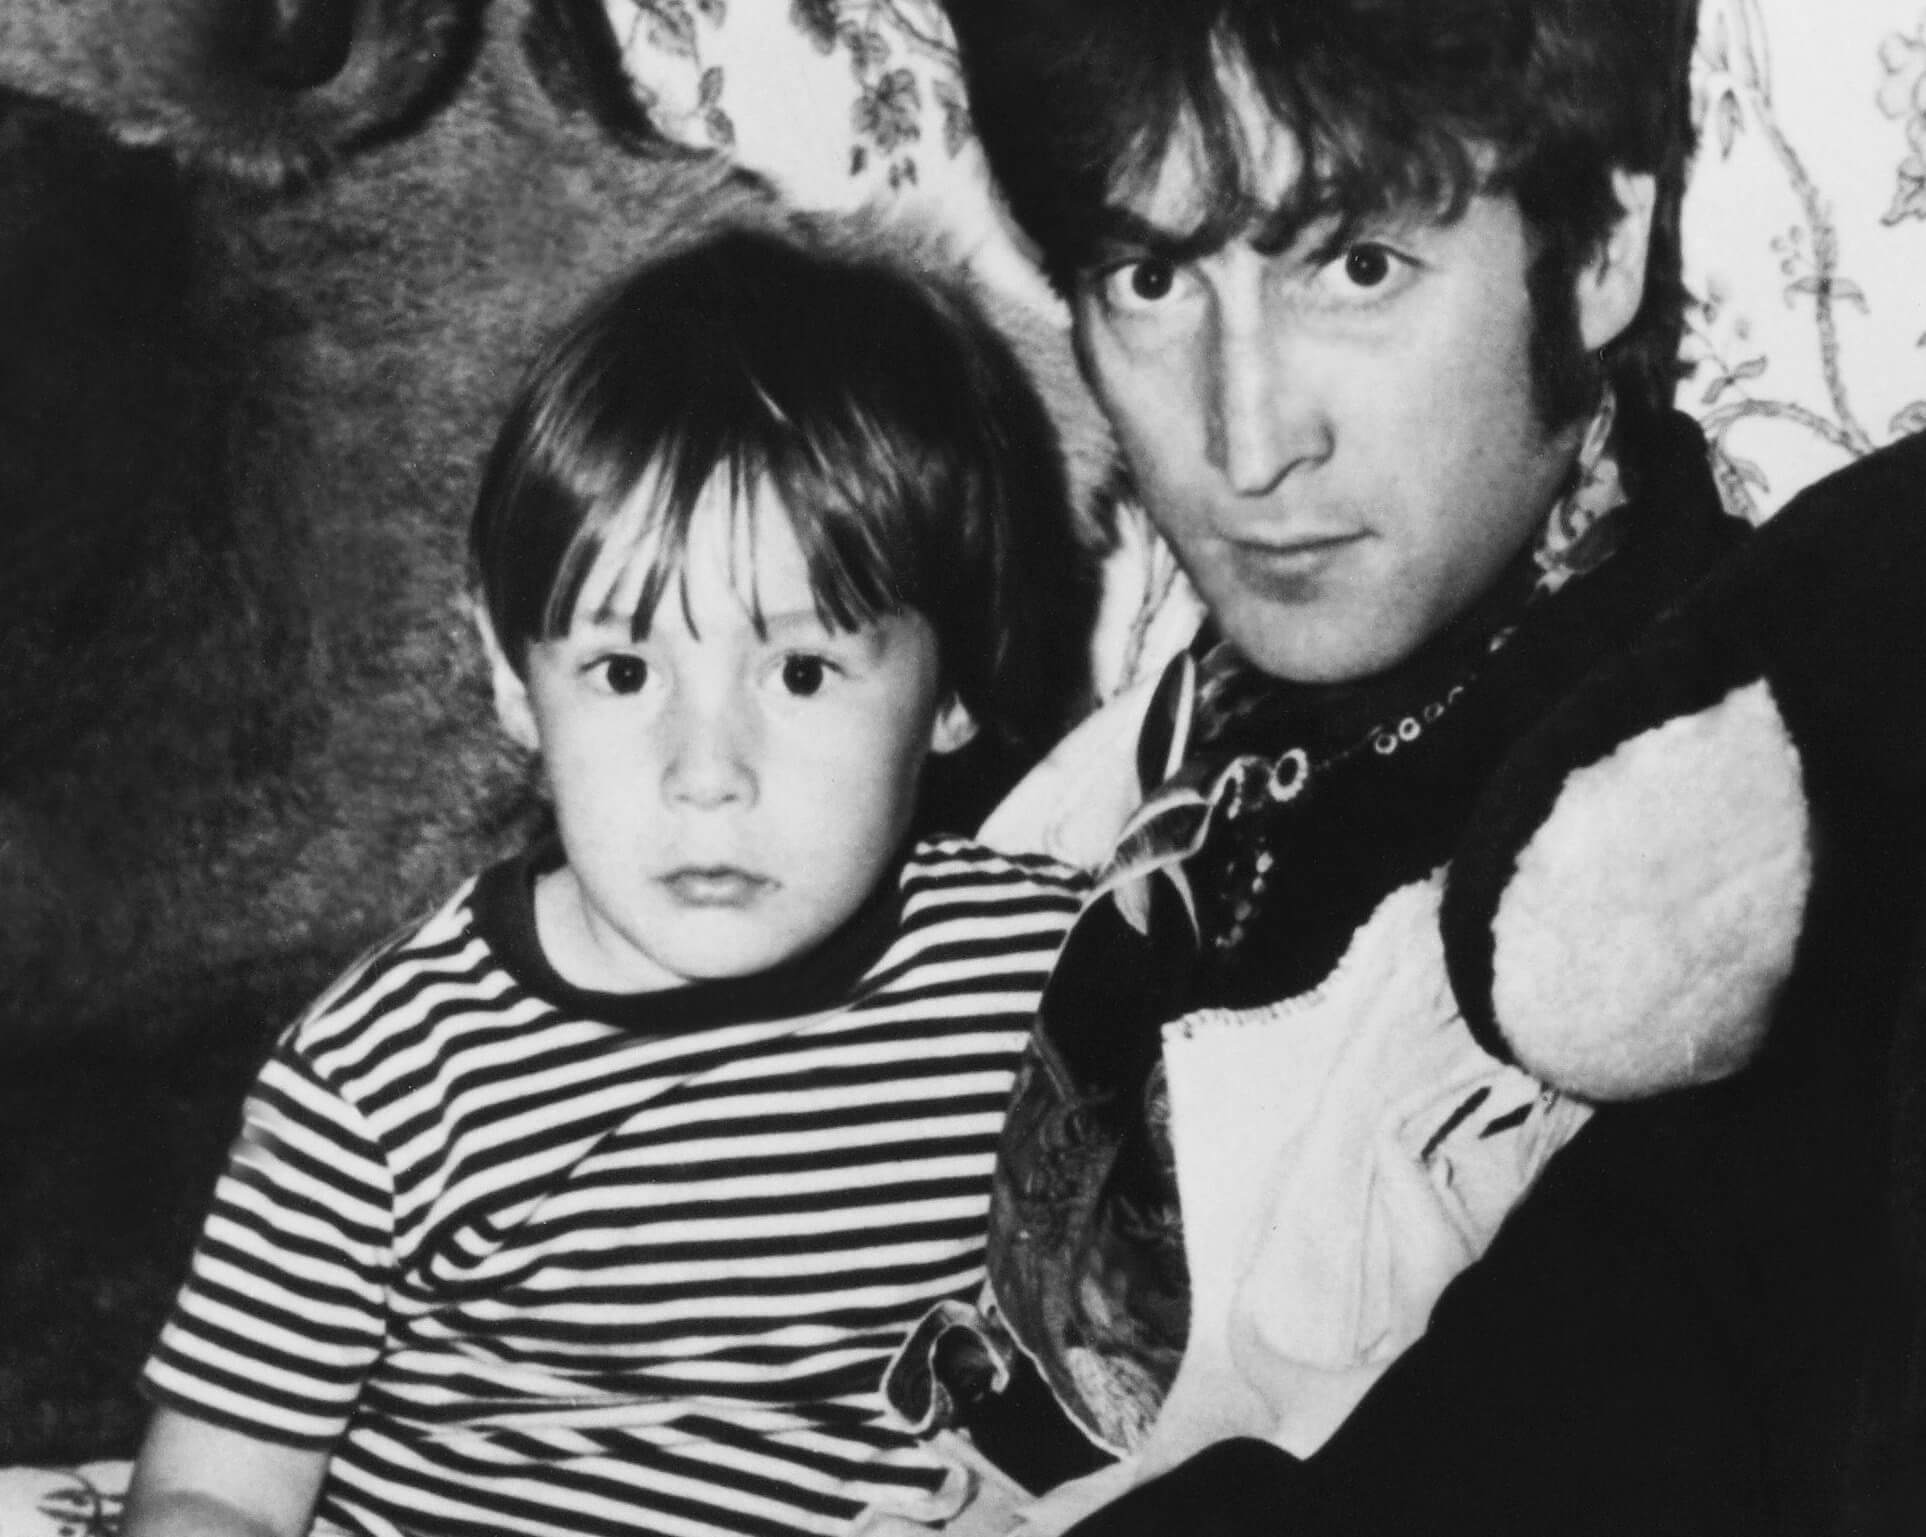 The Beatles' John Lennon holding his son, Julian Lennon